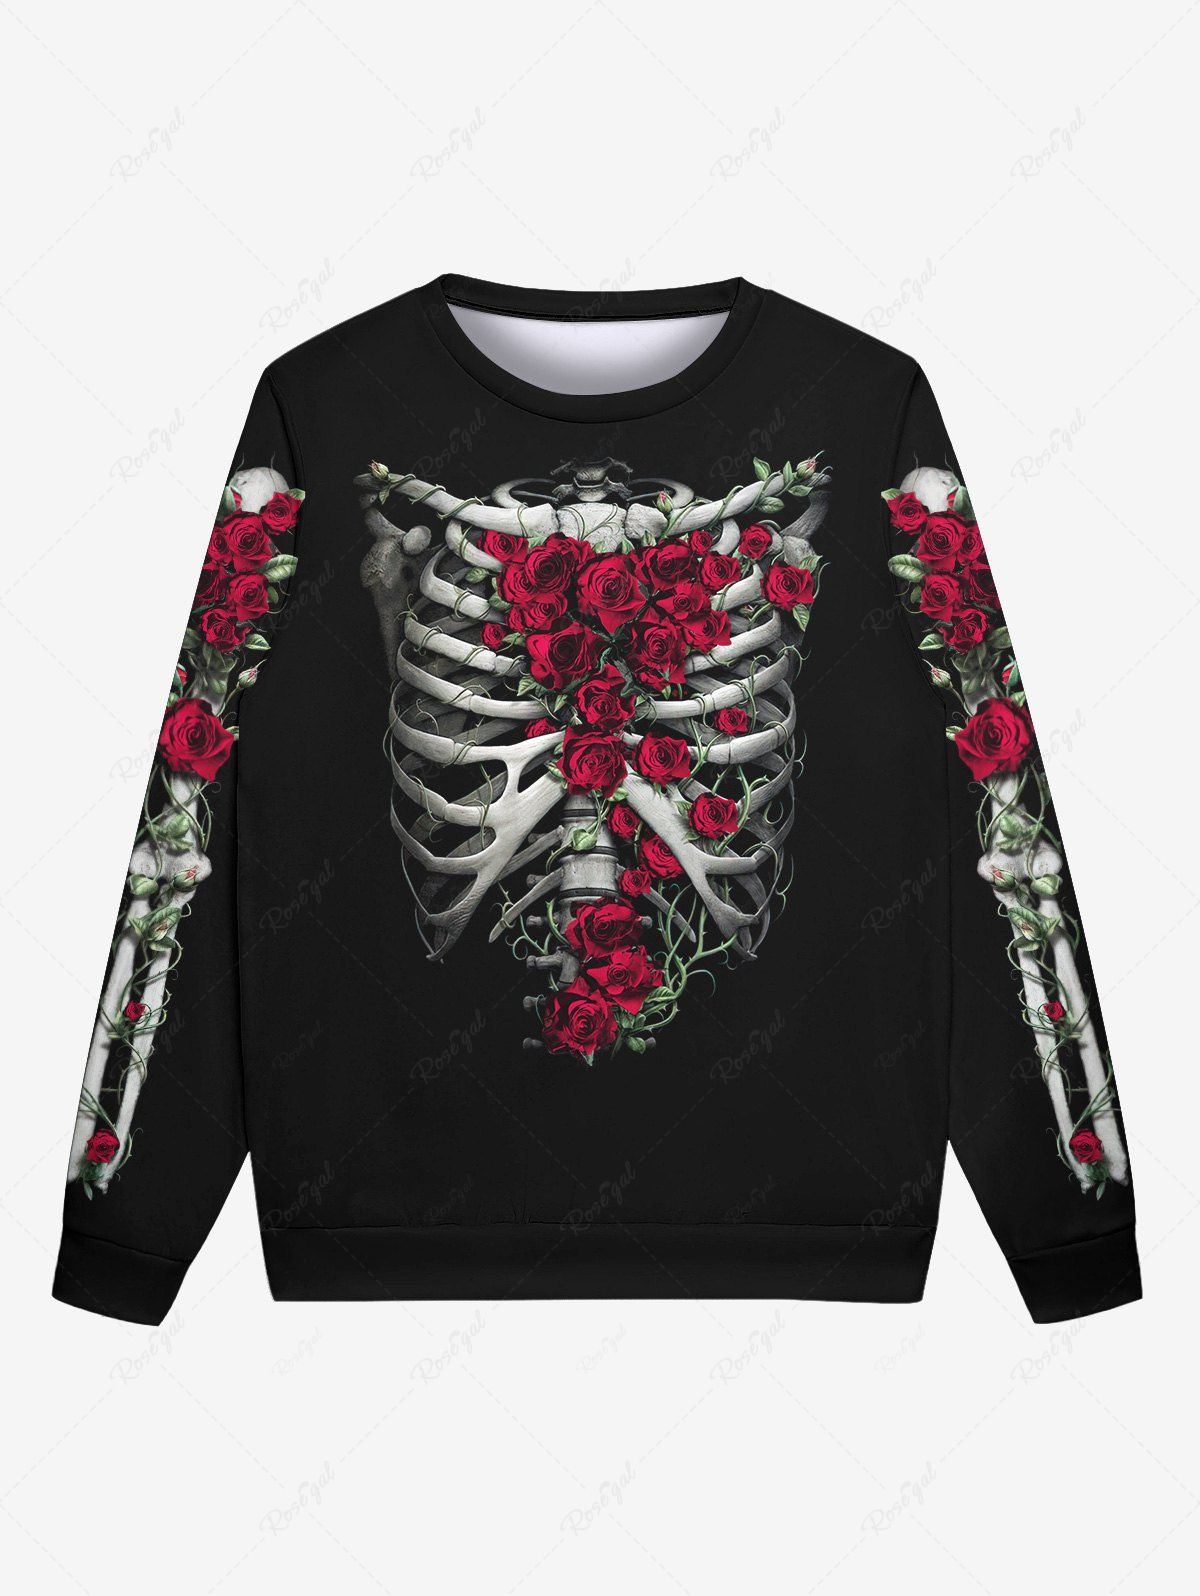 Hot Gothic Skeleton Rose Flower Print Crew Neck Sweatshirt For Men  